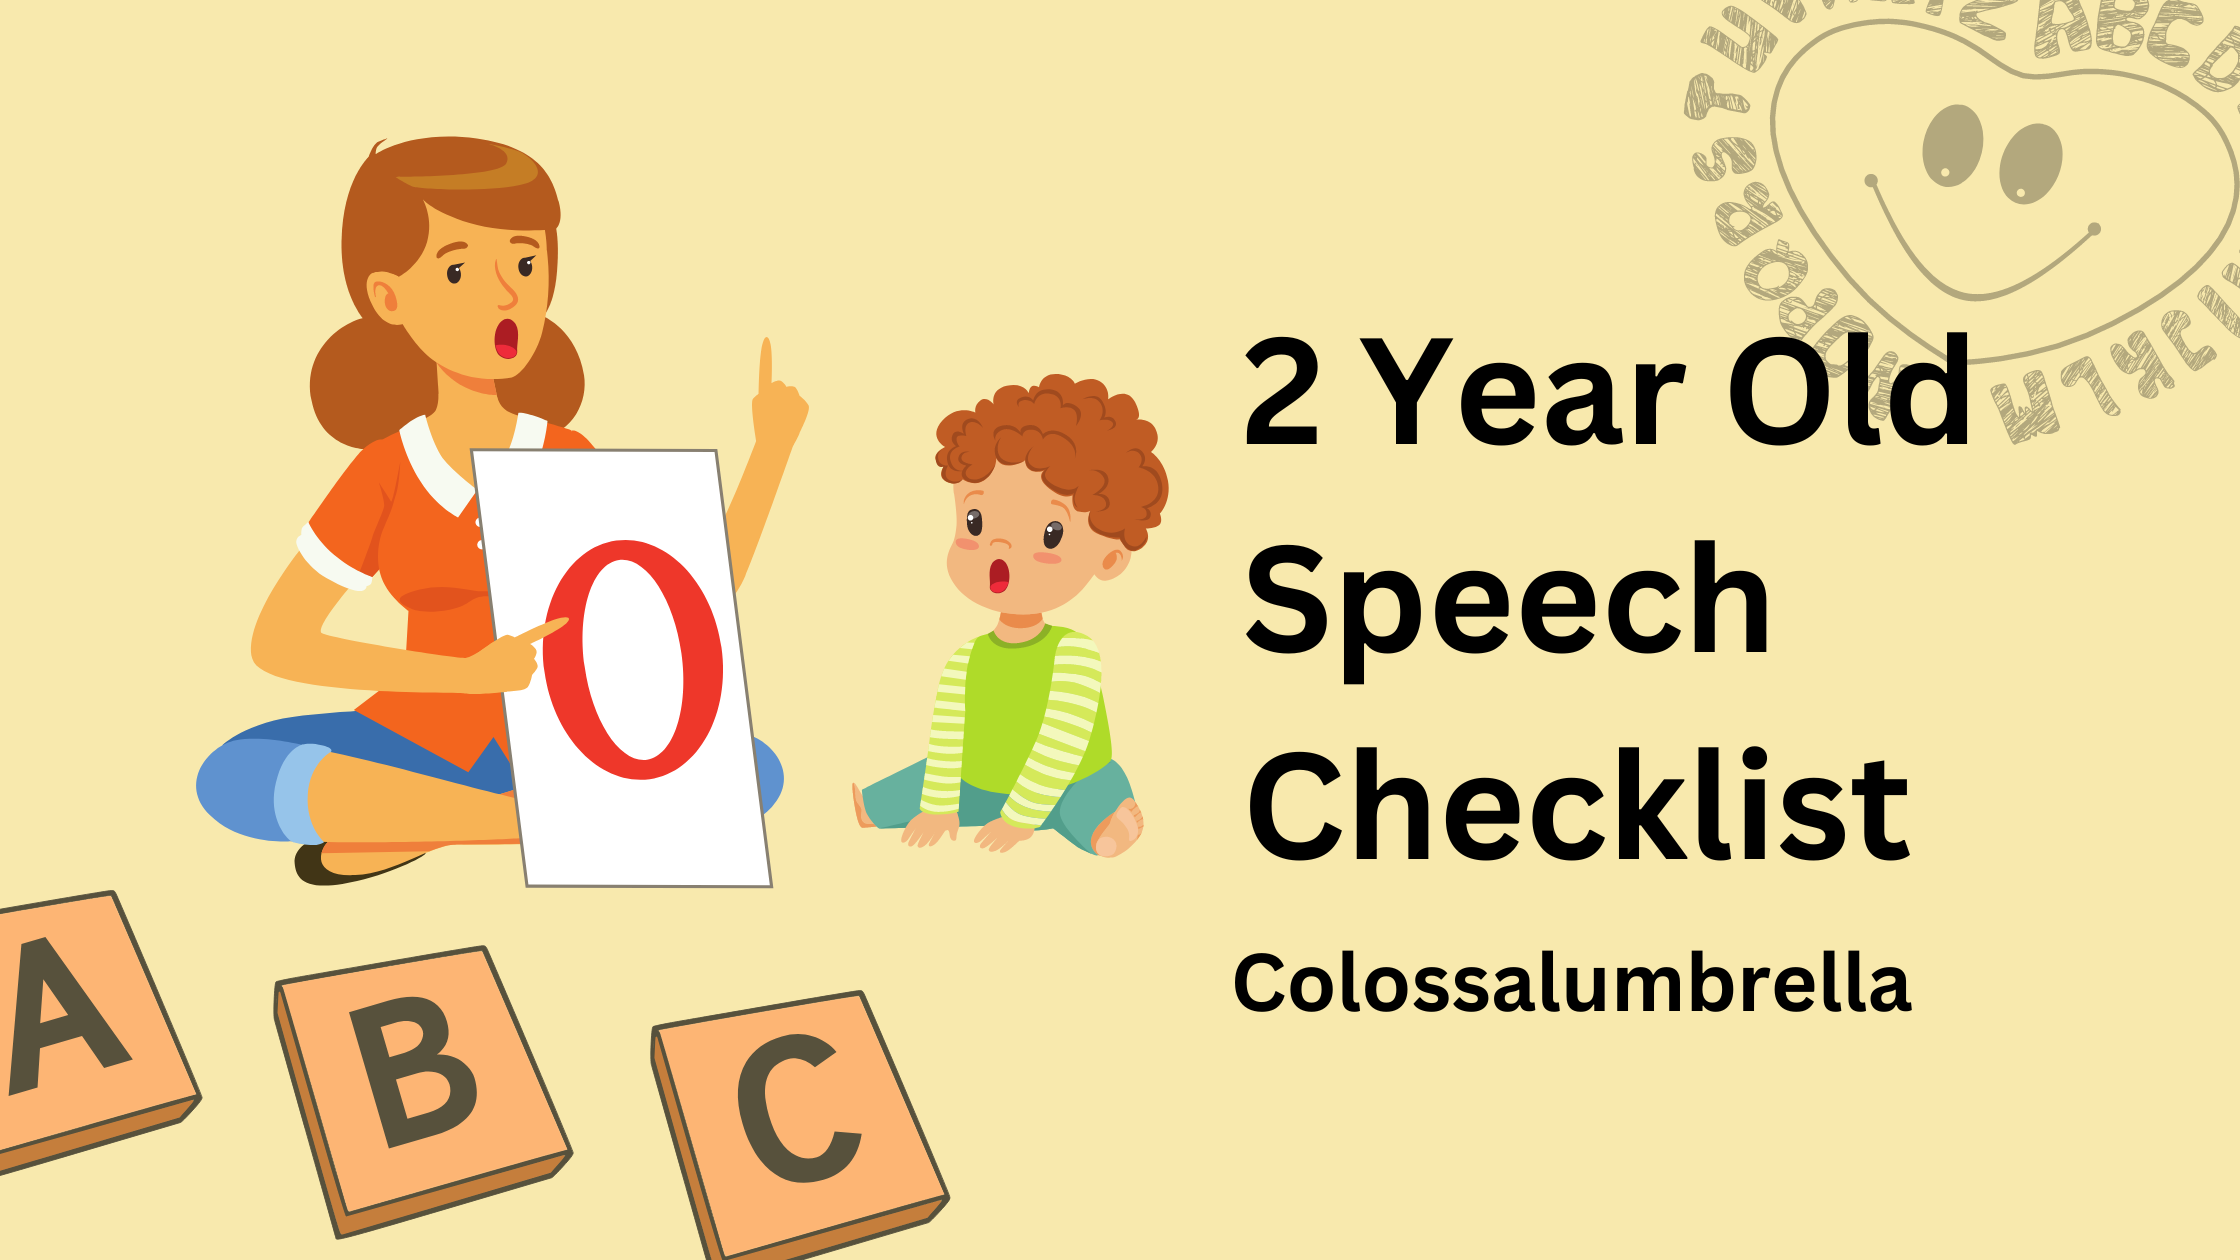 2 Year Old Speech Checklist -Download Free 50 word checklist